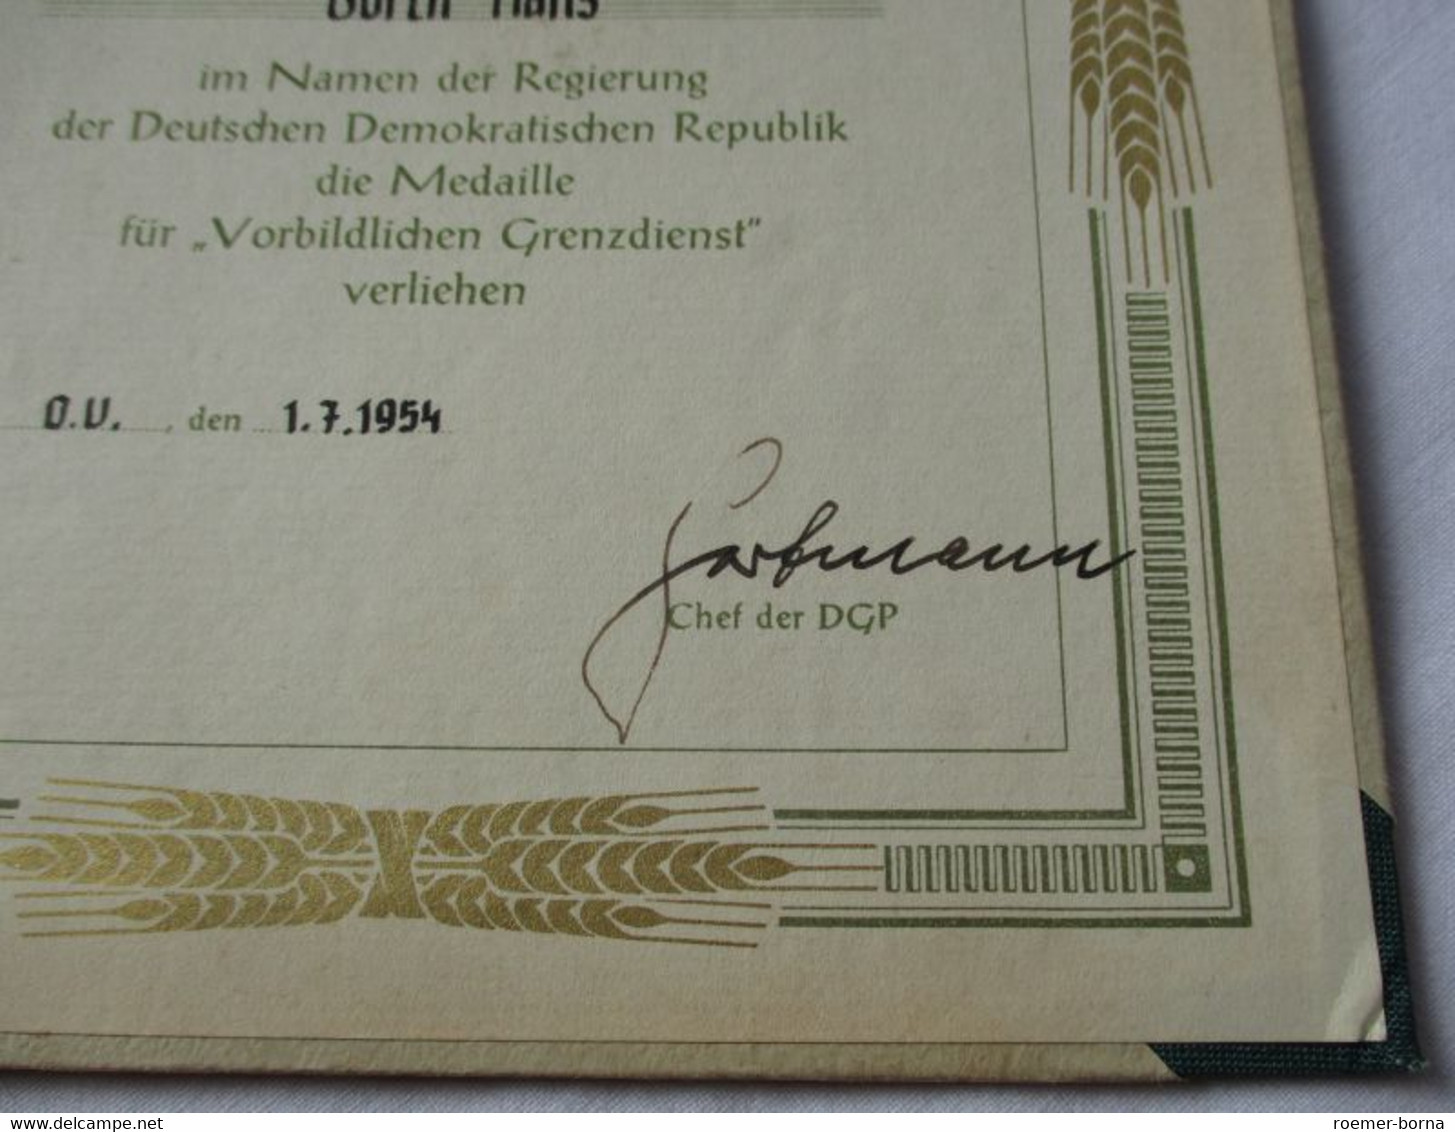 DDR Medaille Für Vorbildlichen Grenzdienst 1954 Verleihungsnummer 2110 (123785) - DDR